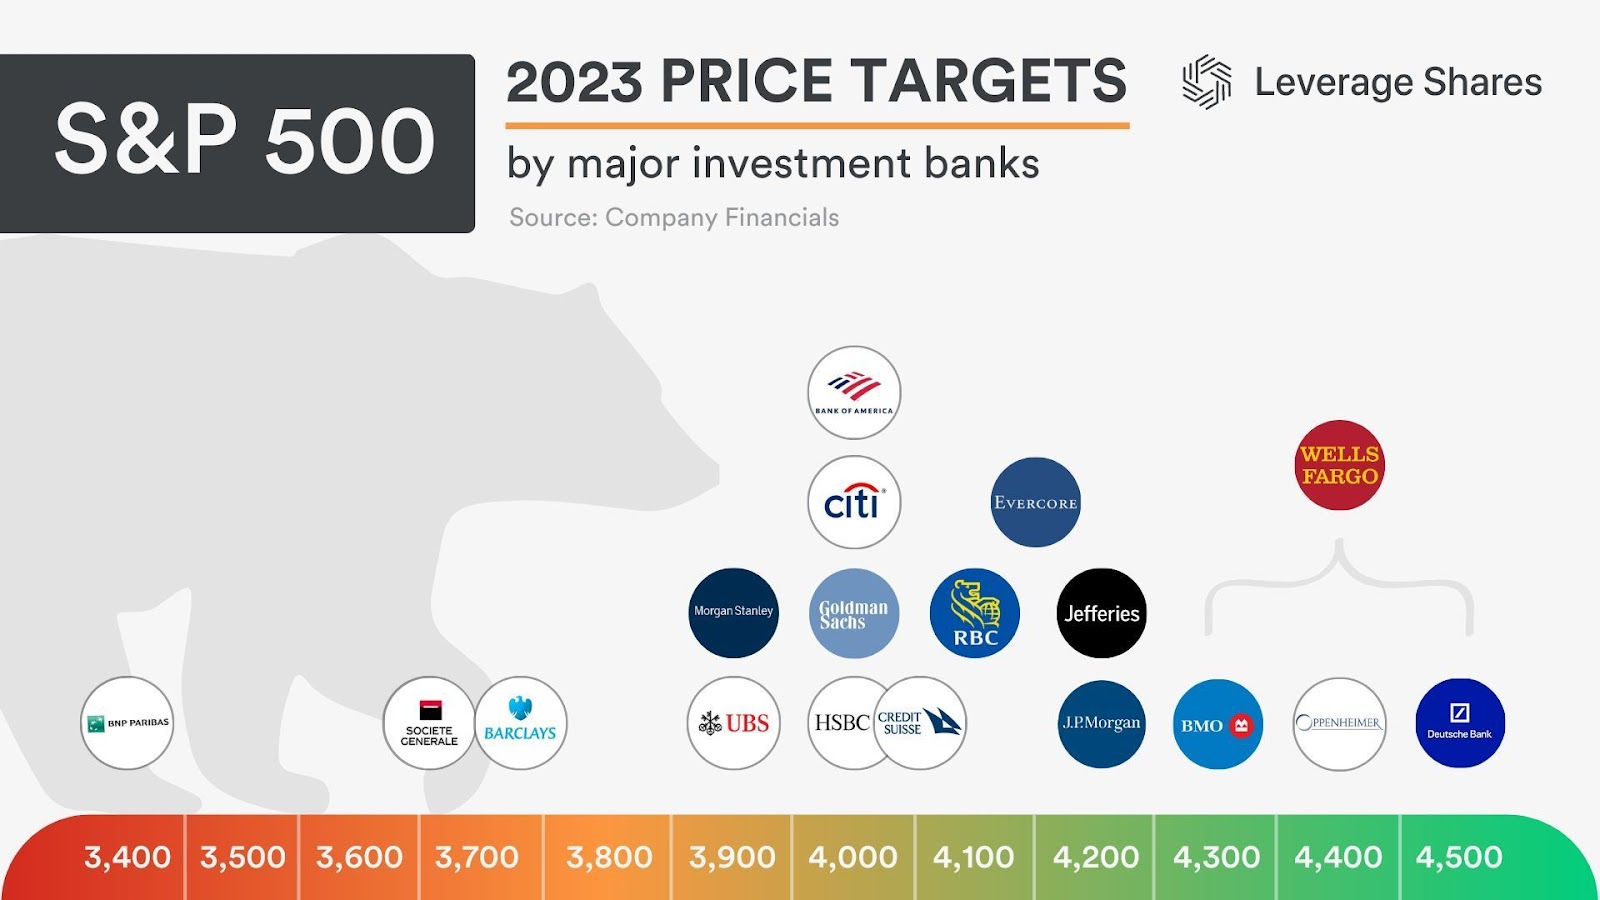 A maioria dos bancos acredita que o S&P 500 deve terminar 2023 entre 3,900 a 4,200 pontos